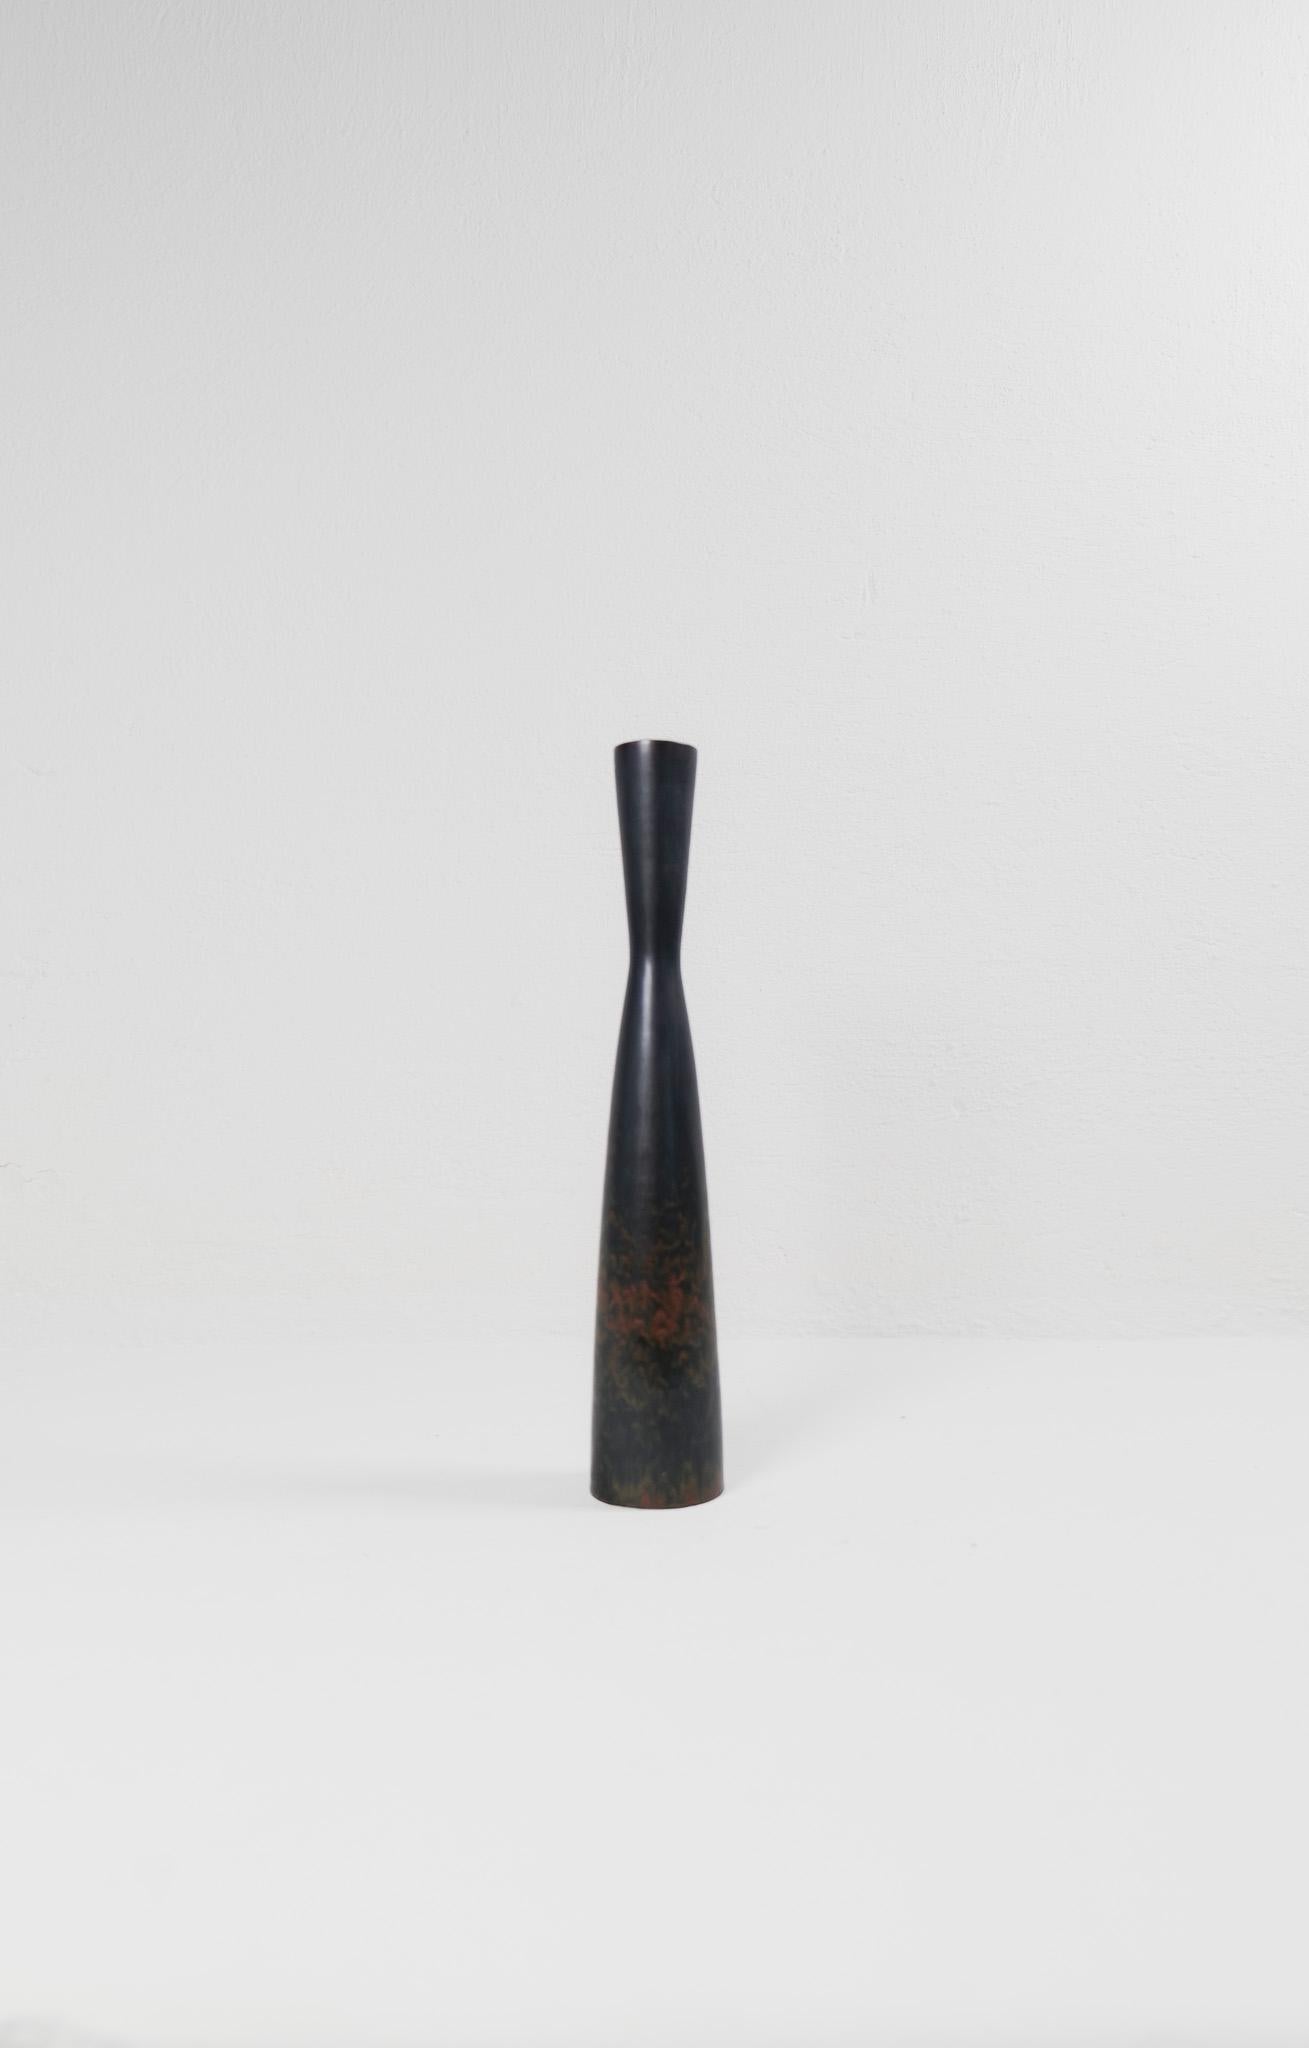 Diese außergewöhnliche Vase von Rörstrand und dem Hersteller oder Designer Carl Harry Stålhane wurde Mitte des Jahrhunderts in Schweden hergestellt. Die schöne Glasur in Kombination mit den unglaublichen sanduhrförmigen Formen macht dieses Stück zu